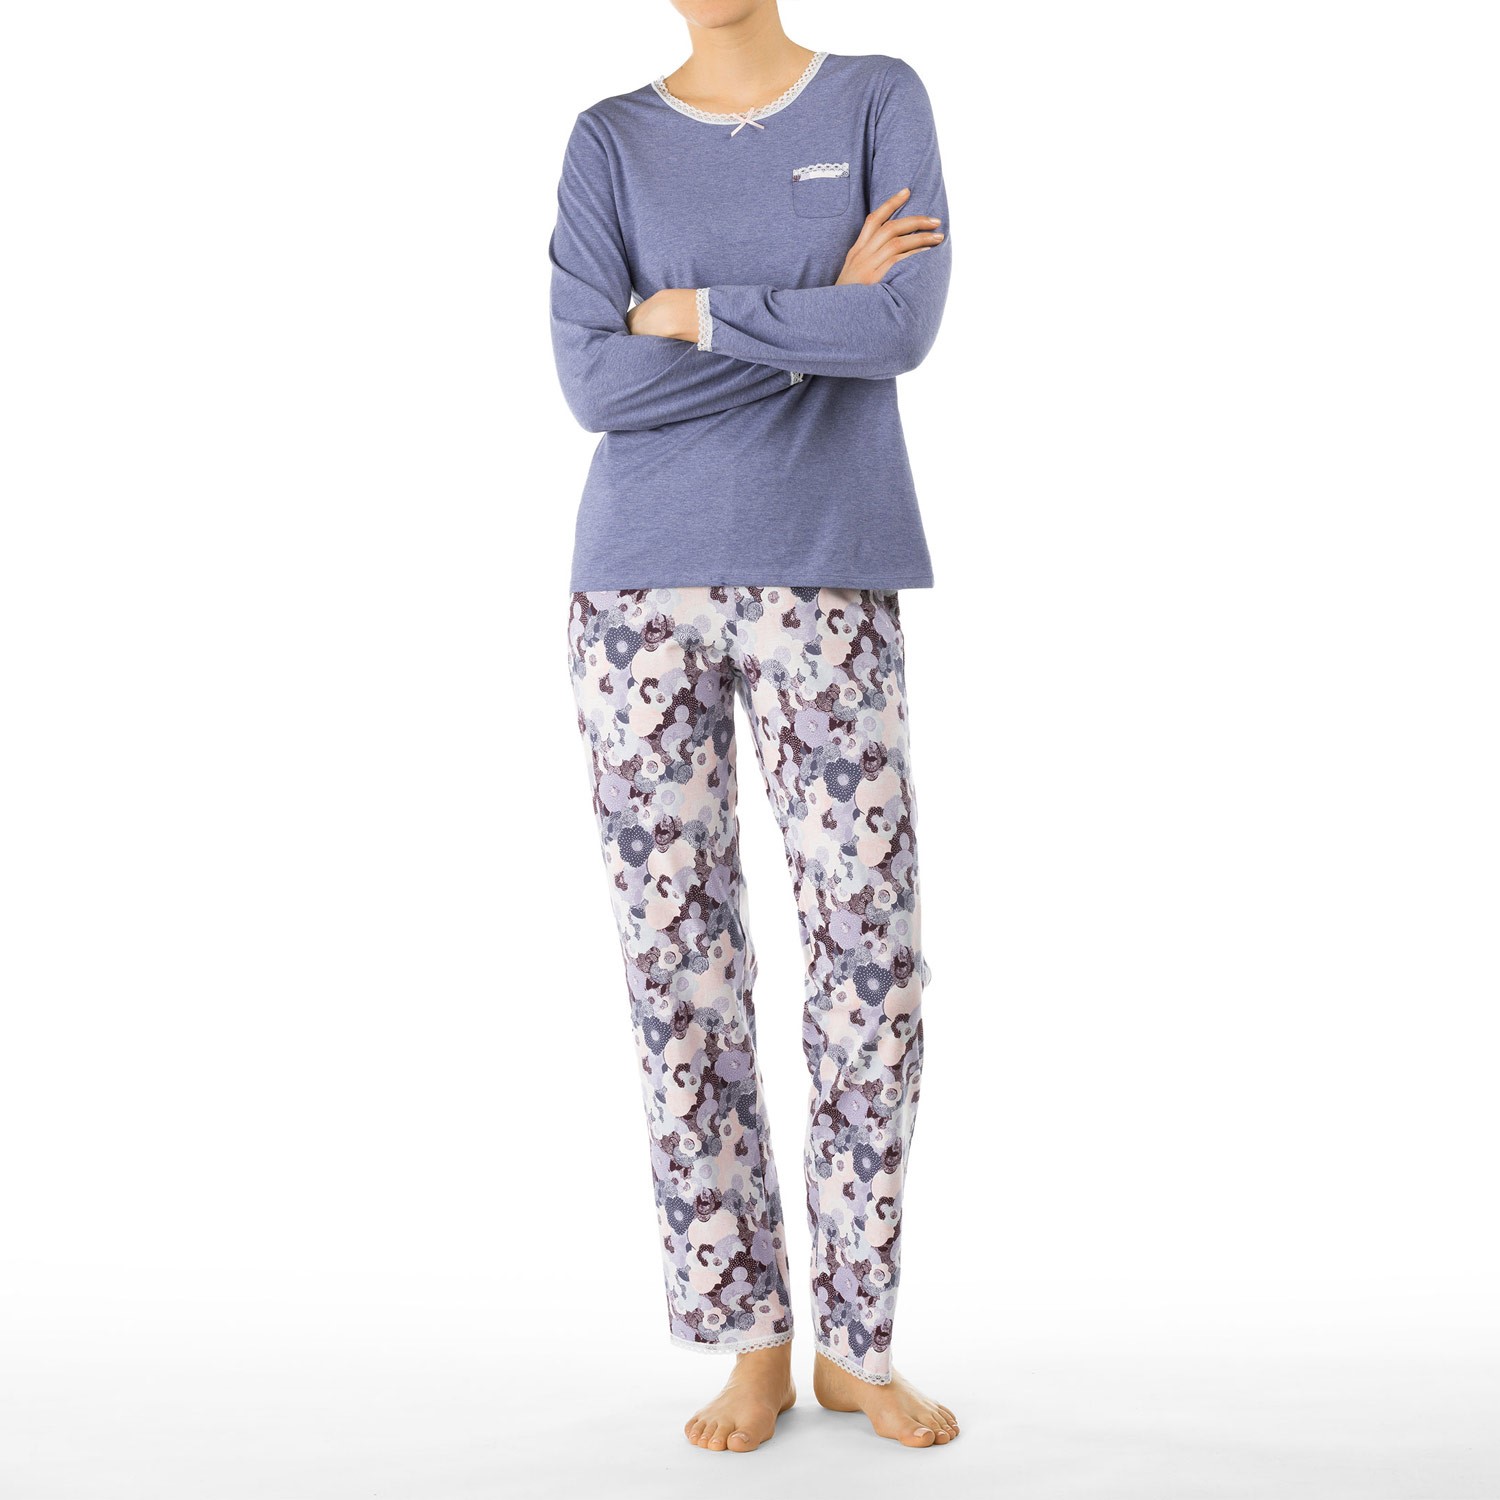 Calida Moonlightning Pyjama